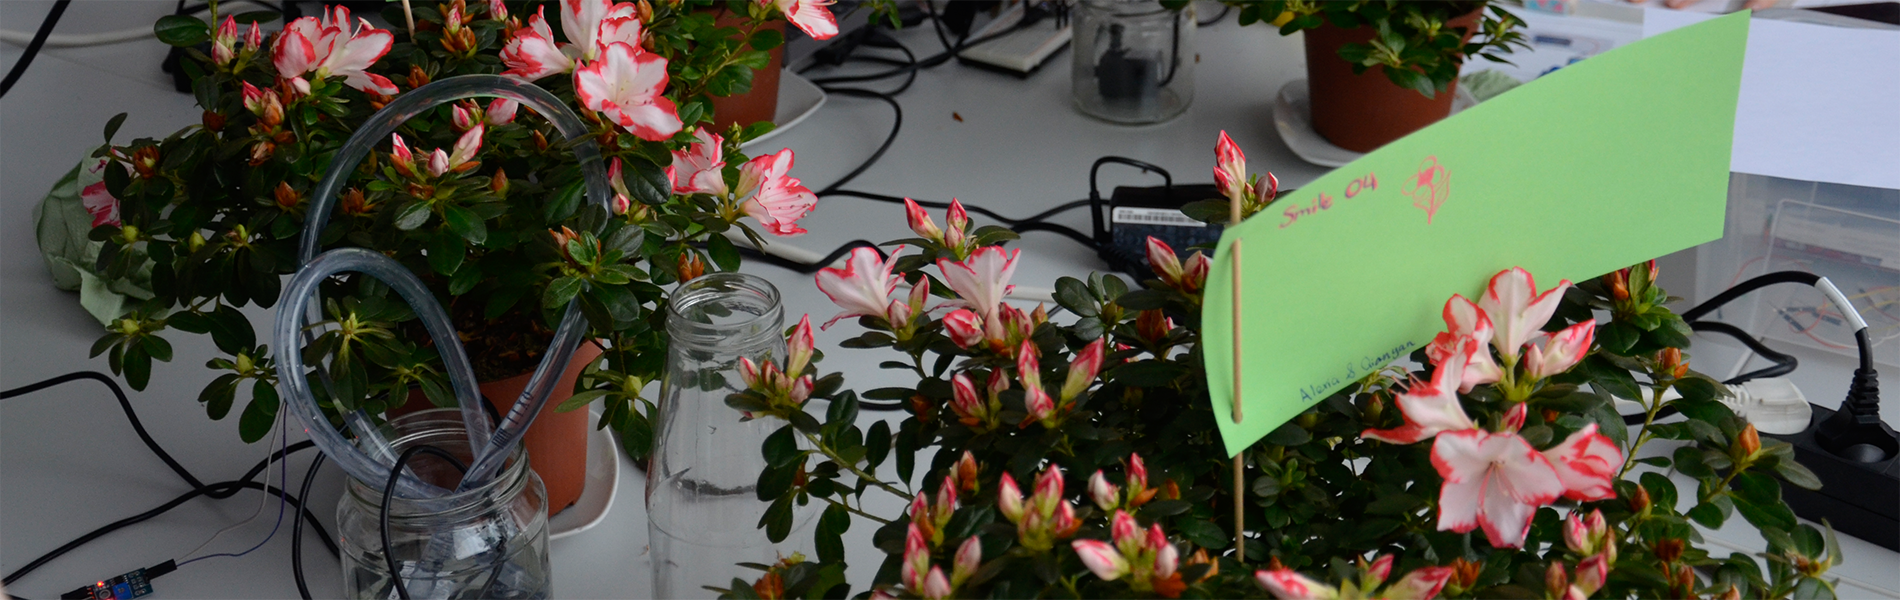 Dieses Bild zeigt "Smarte Pflanzen" in der botanika Bremen.